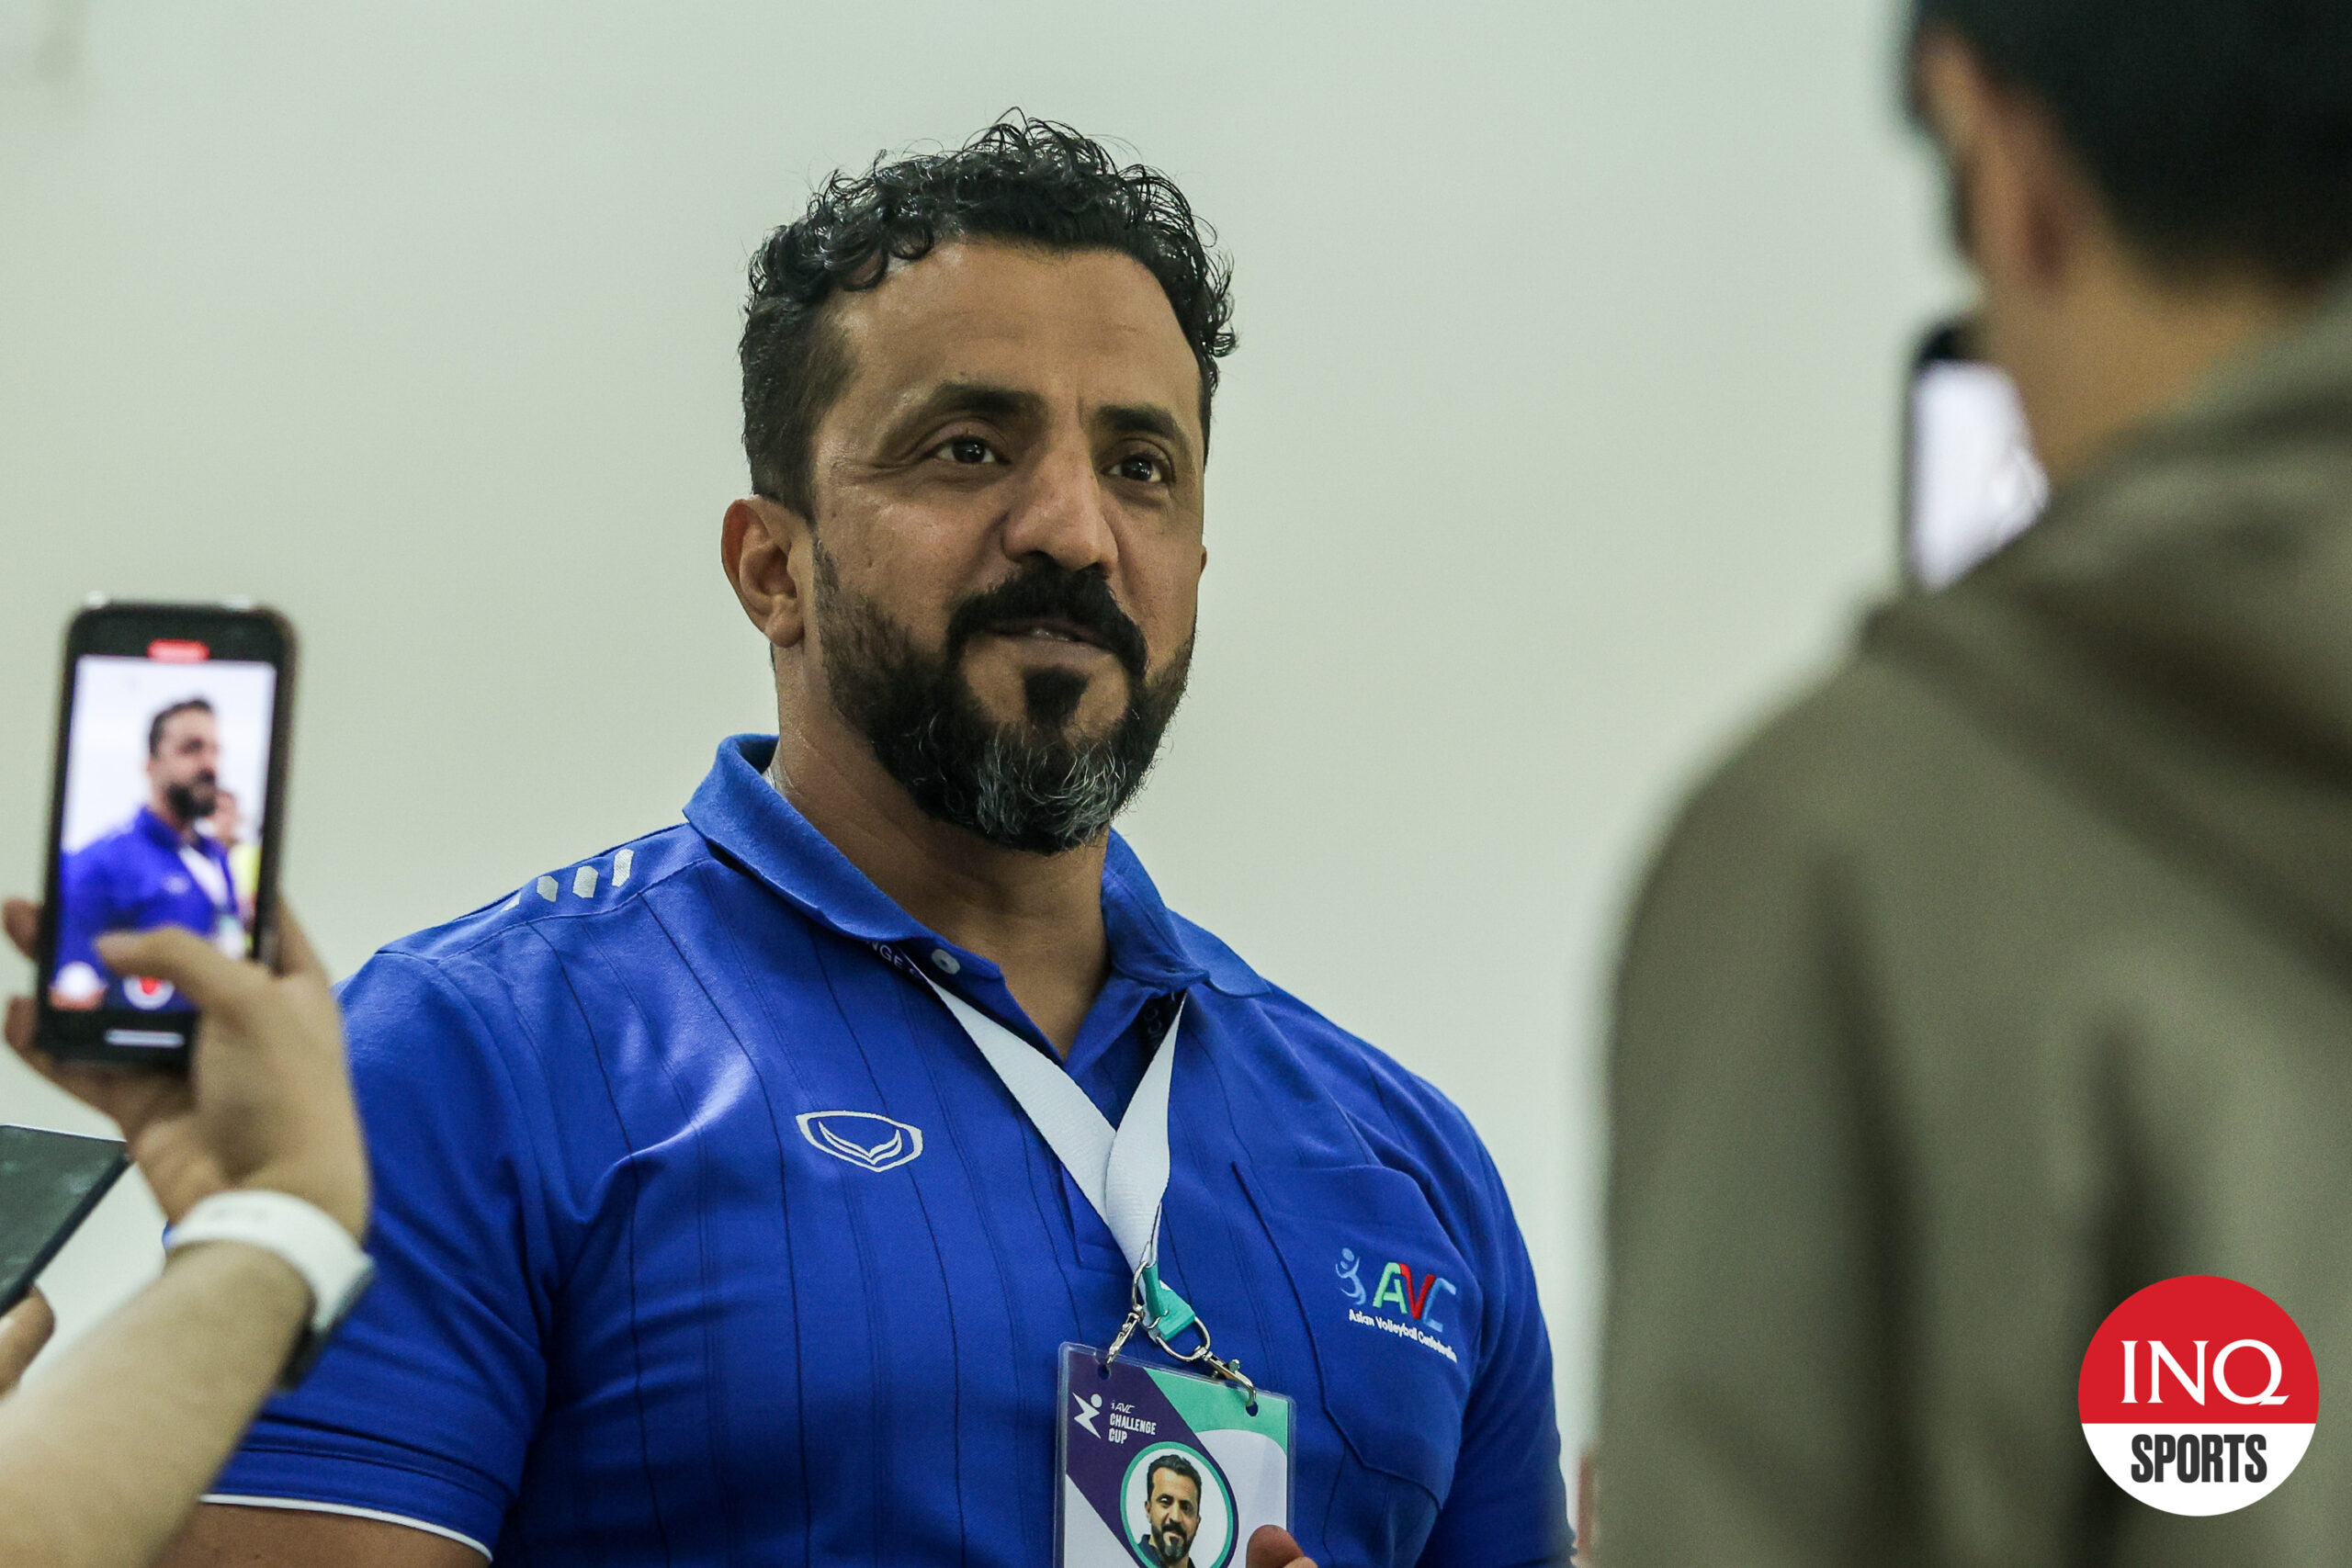 Al Din Ahmed Said Al Riyami AVC Challenge Cup